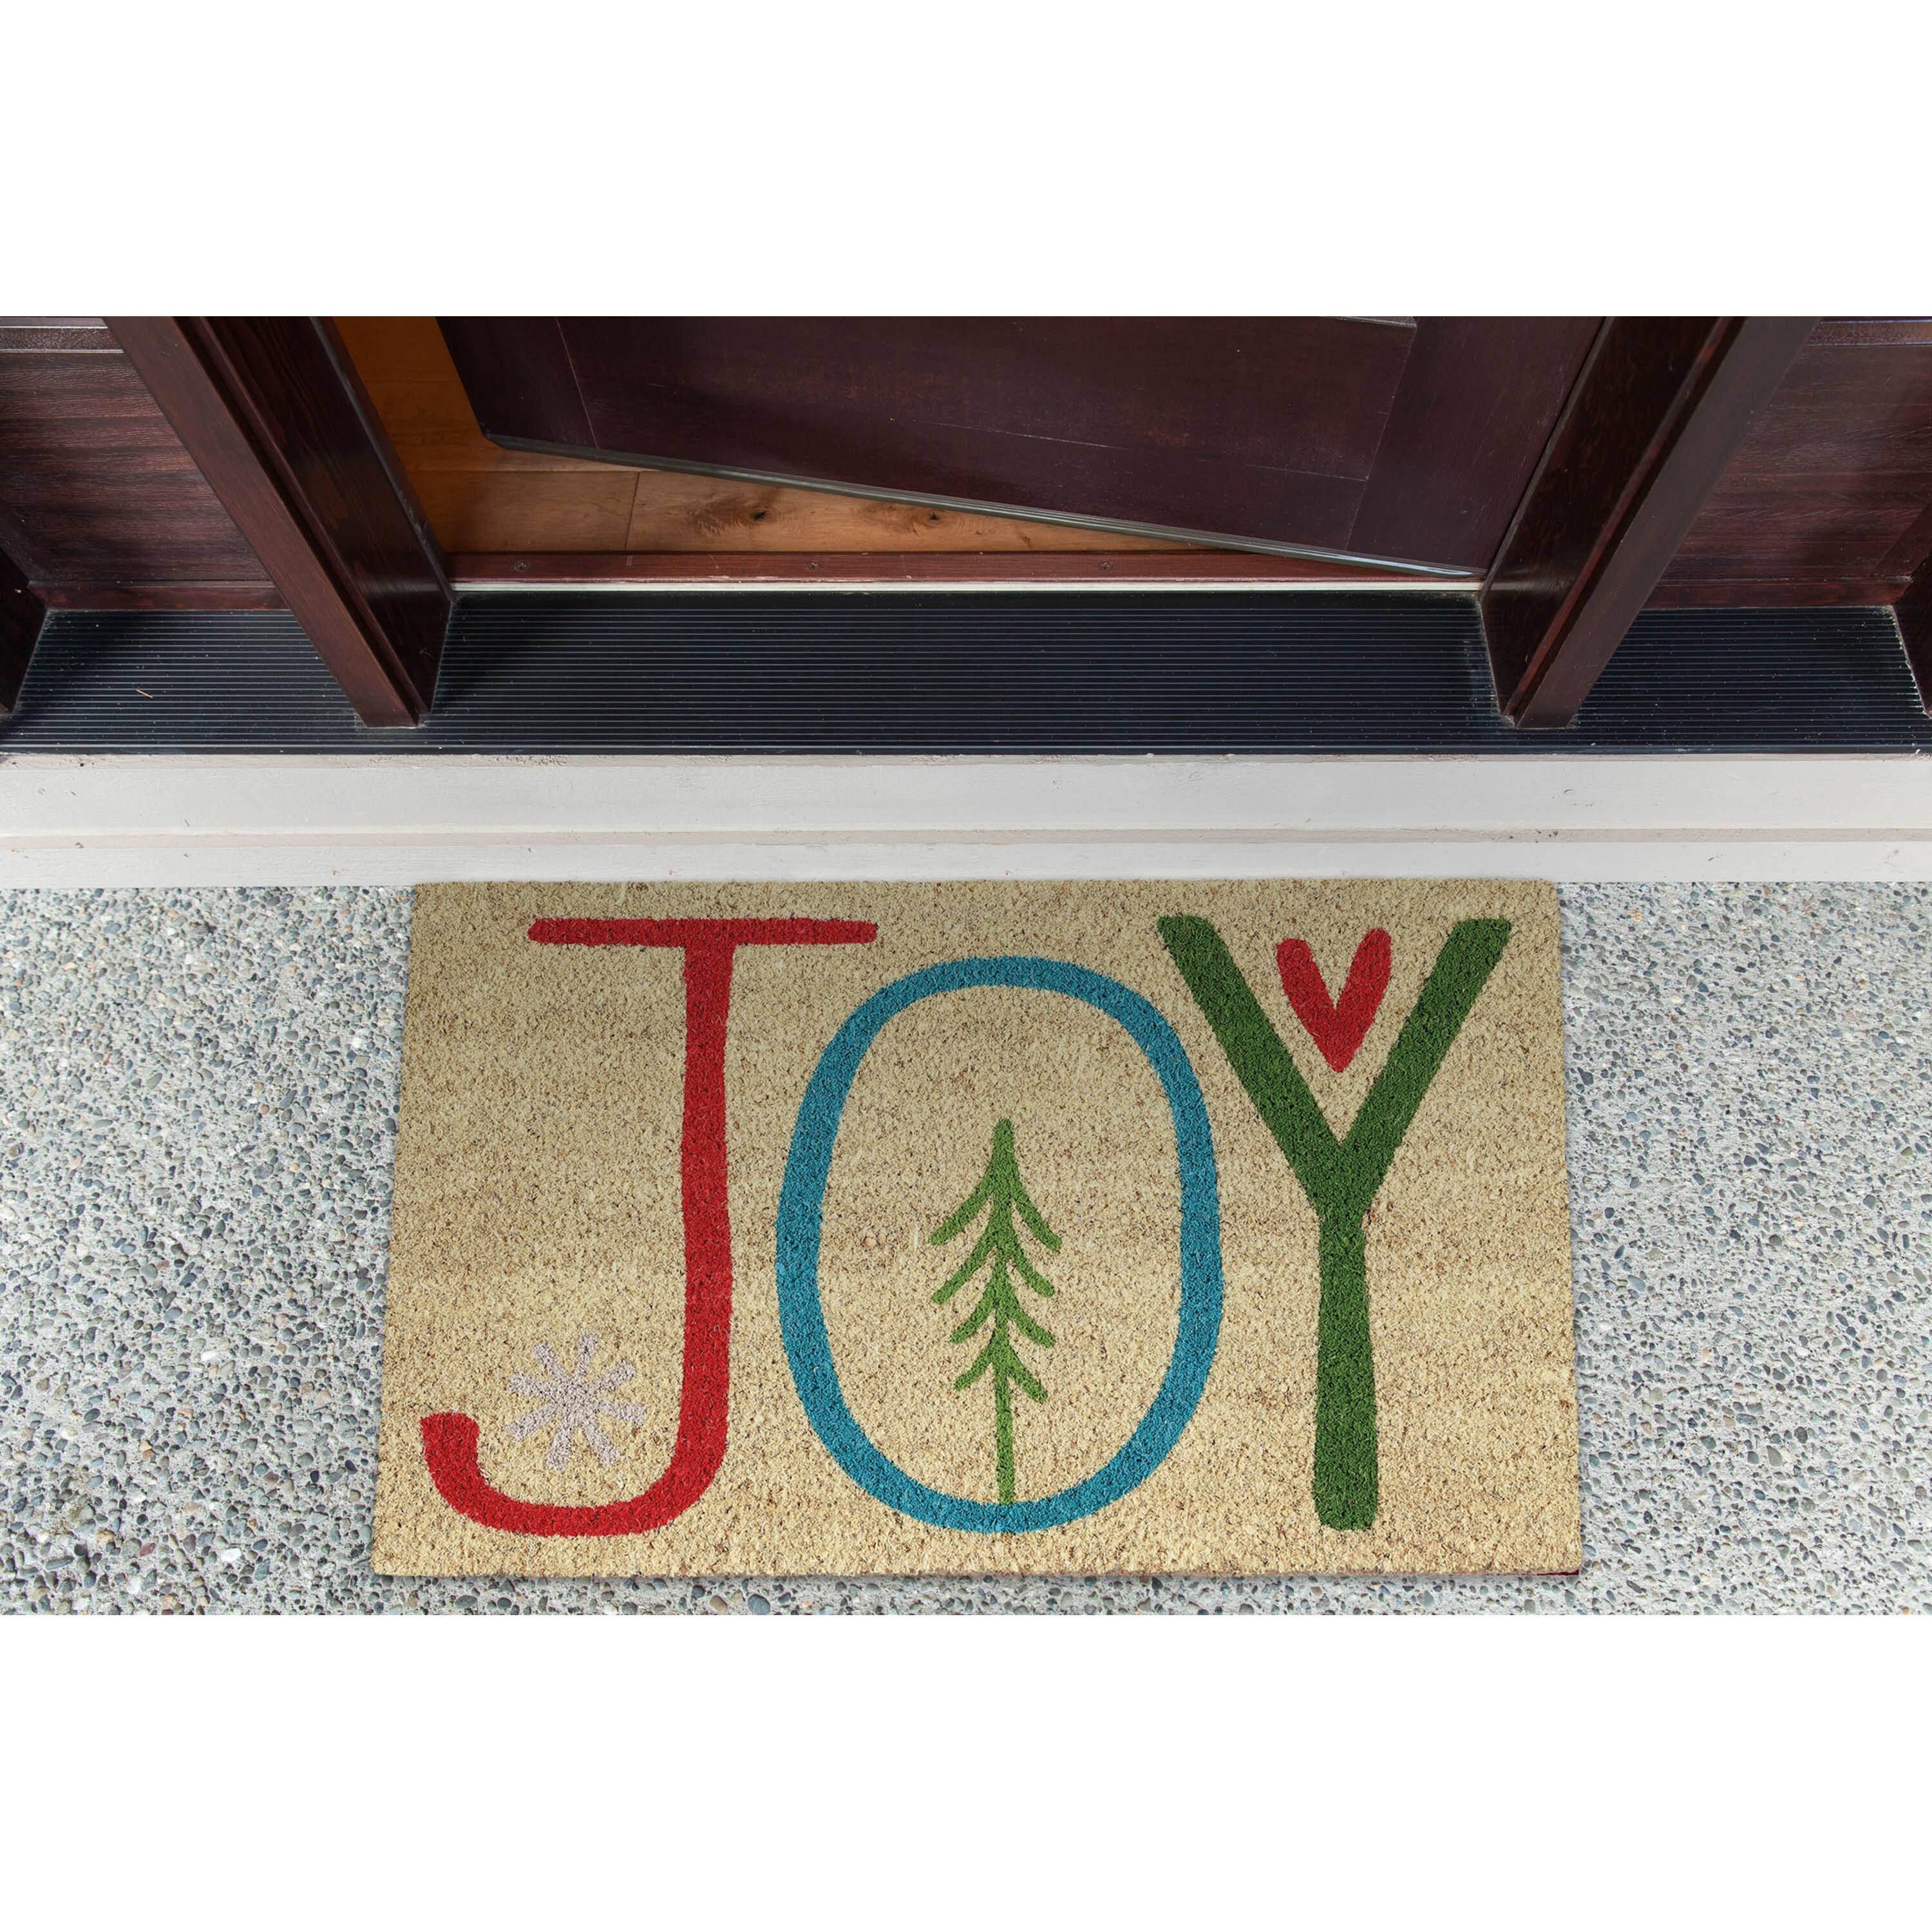 DII&#xAE; Joy Doormat